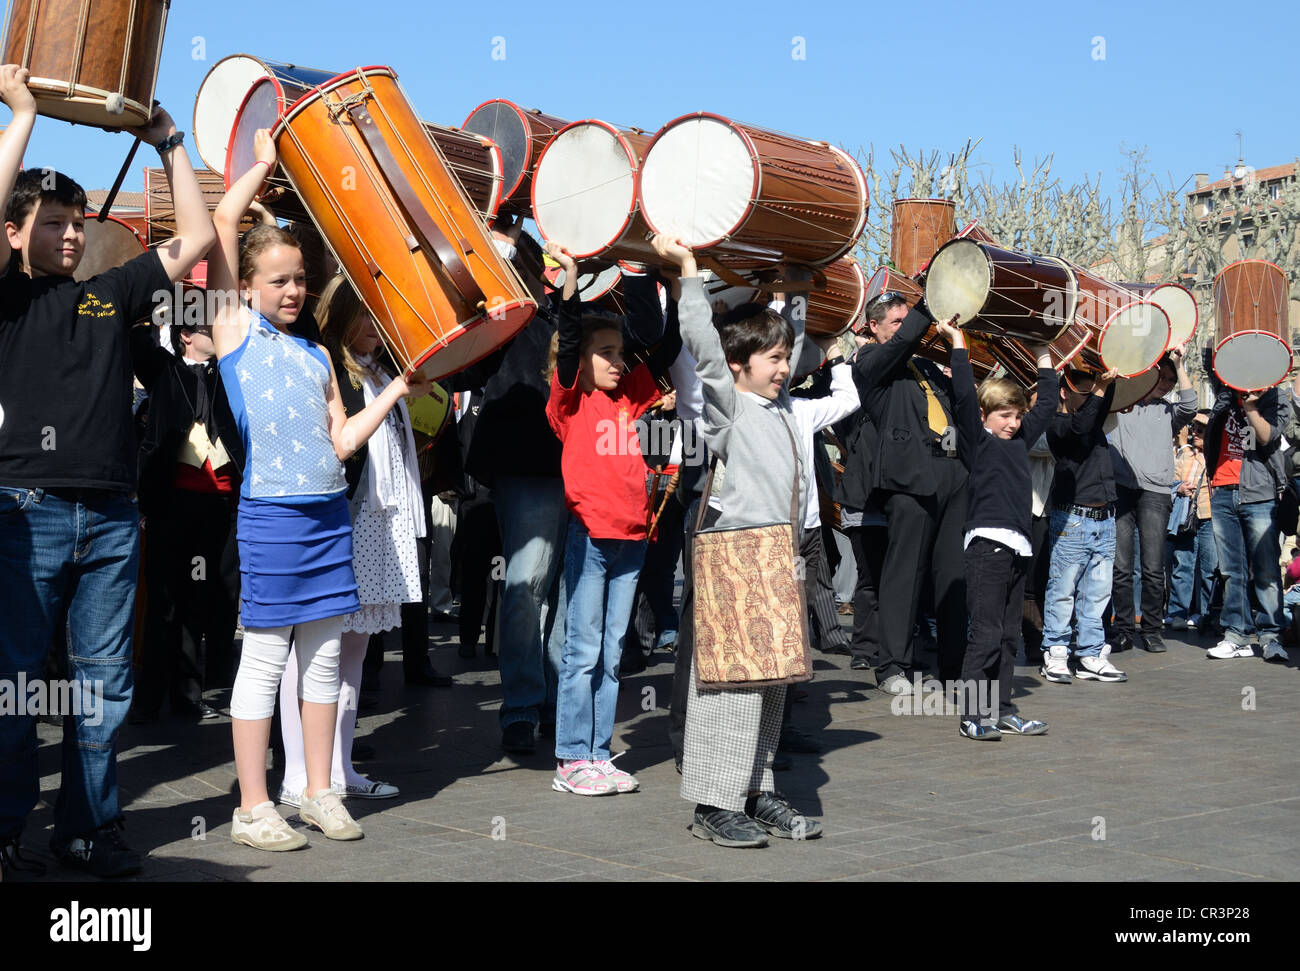 Kinder-Trommler halten Trommeln in der Luft im provenzalischen Tambourin Oder Drum Festival Aix-en-Provence Provence Frankreich Stockfoto